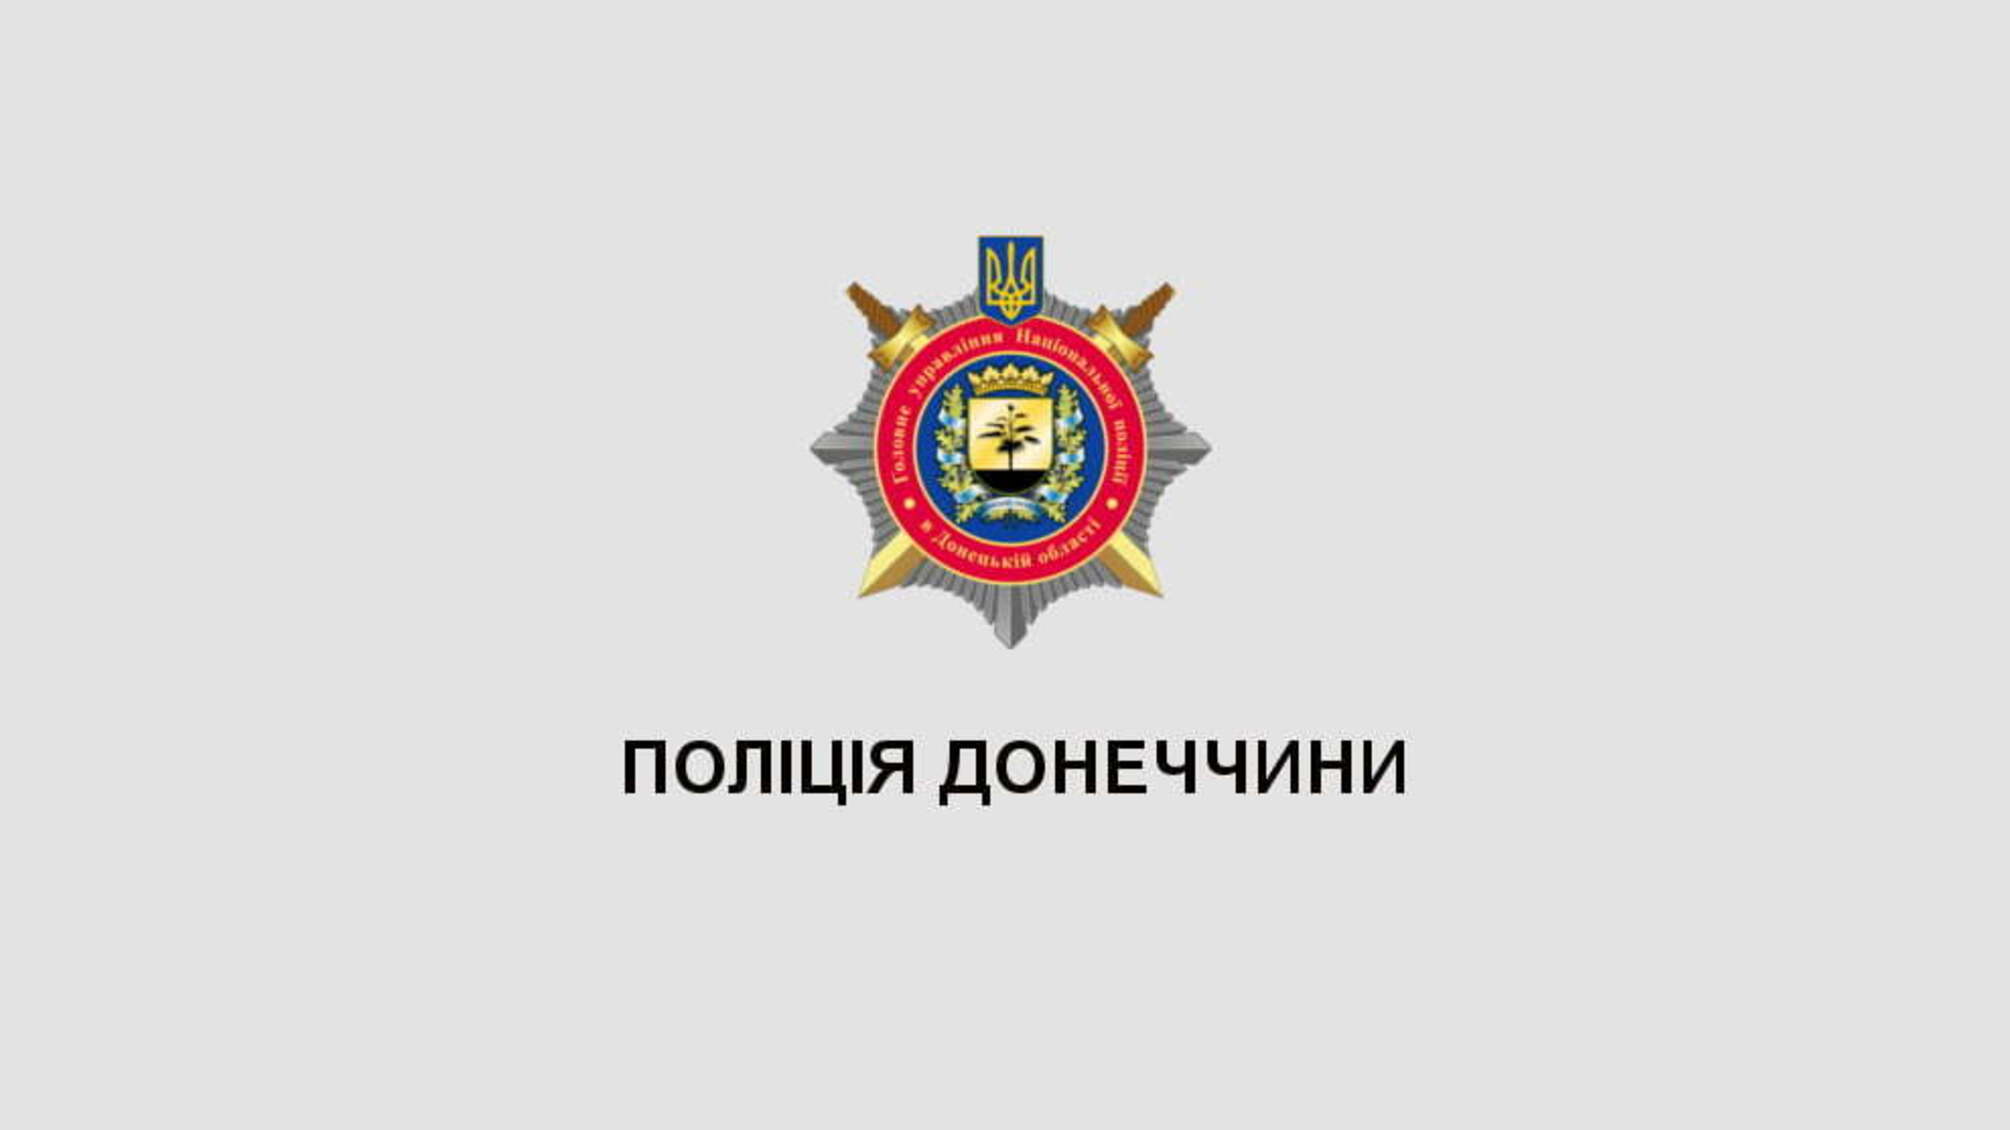 Діти, які тренуються під егідою поліції Донеччини, взяли 15 призових місць на всеукраїнському турнірі з дзюдо